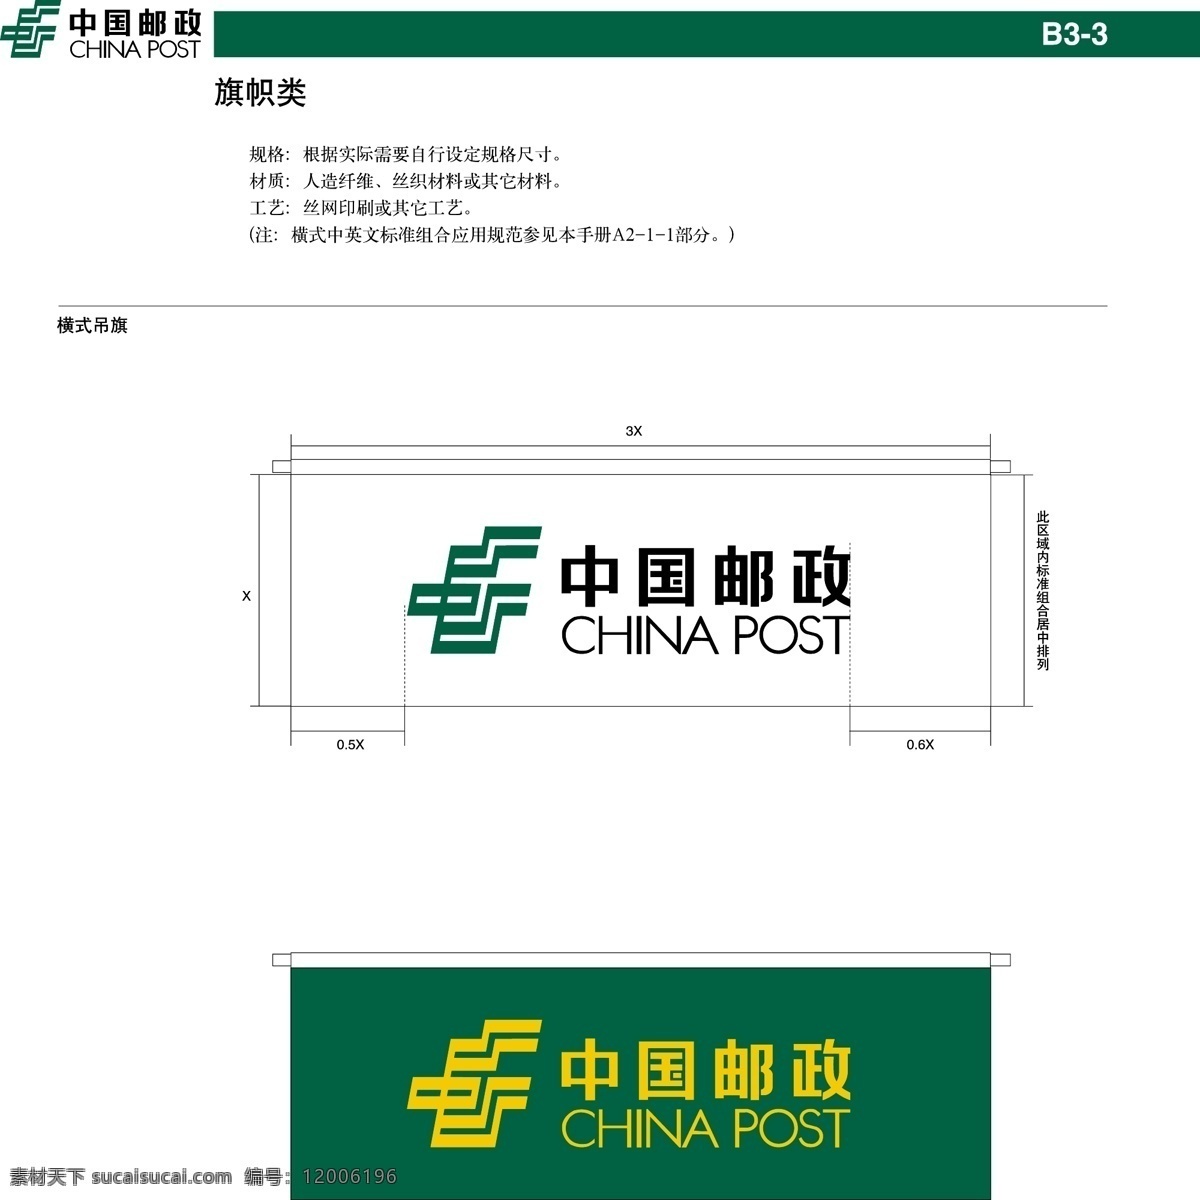 中国 邮政 横 式 吊 旗 vi设计 模板 设计稿 素材元素 源文件 中国邮政 横式吊旗 矢量图